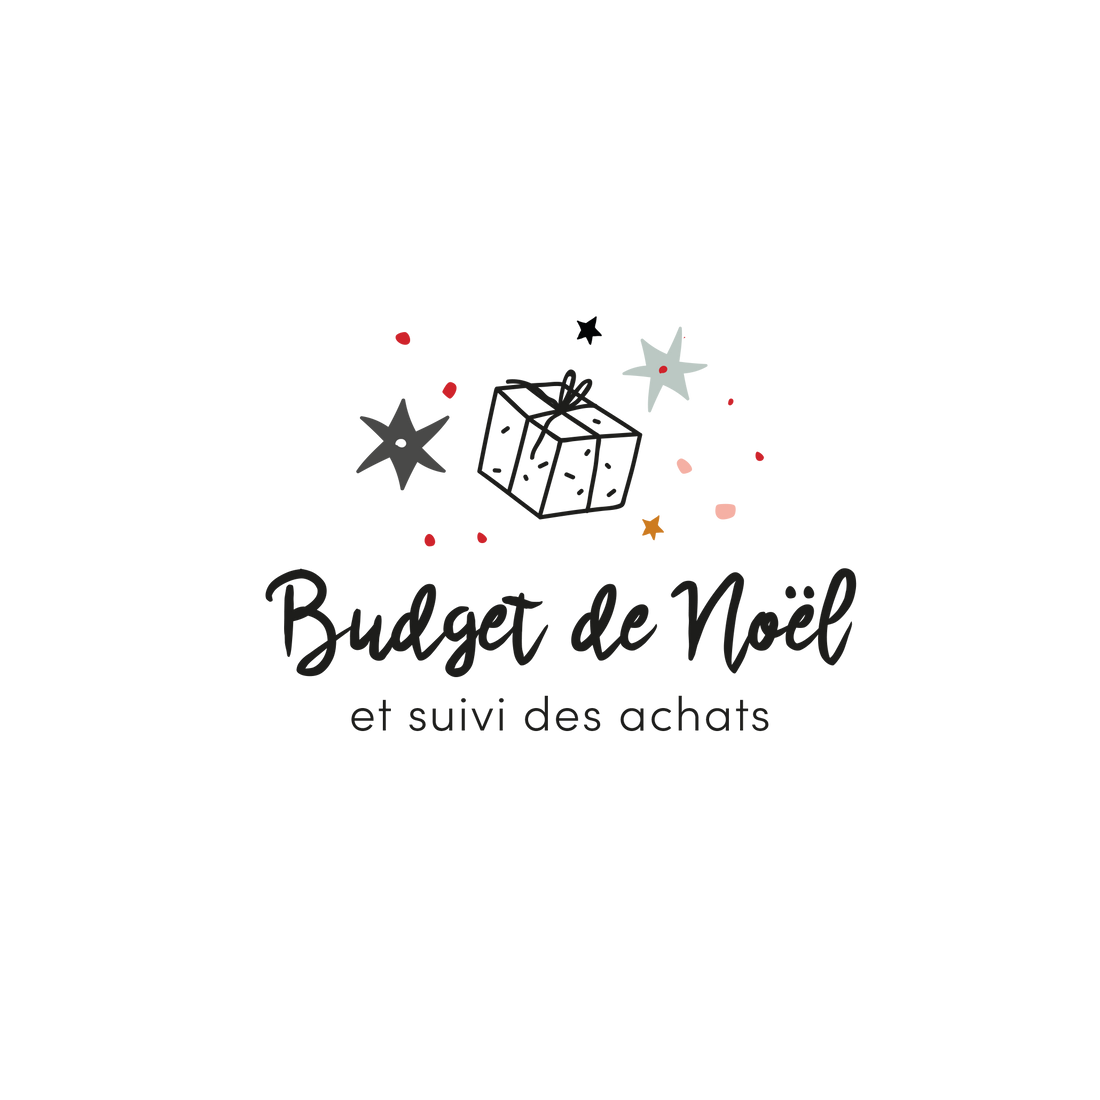 Version française du logo de la petite combine Budget de Noël et suivi des achats Les Belles Combines